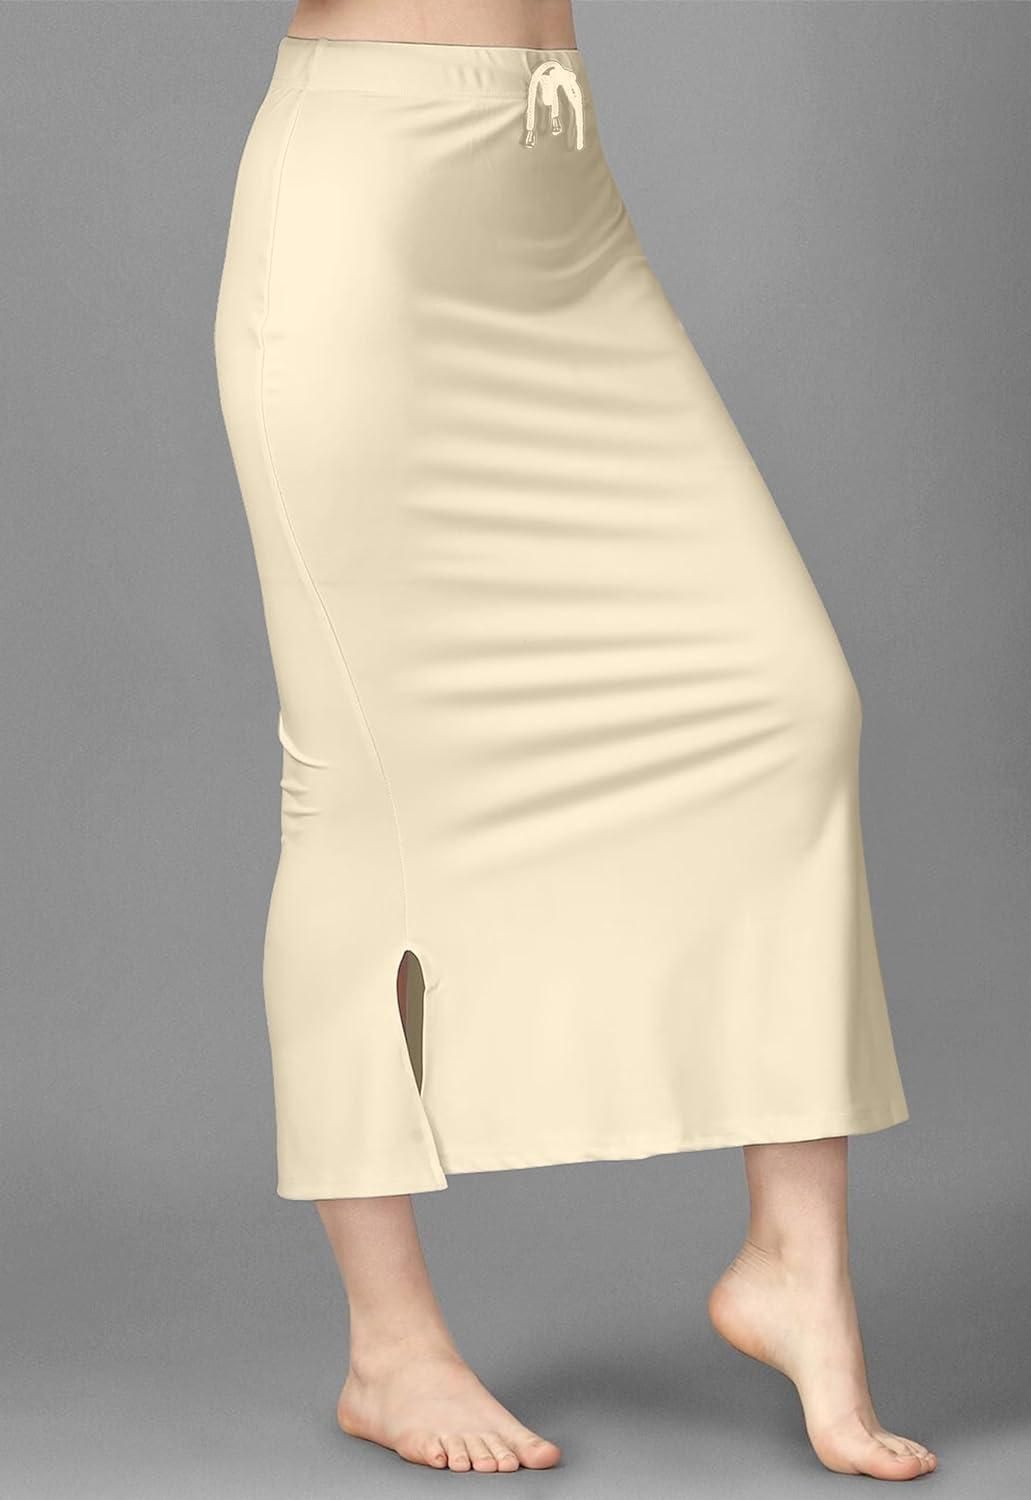 Mehrang Microfiber Saree Shapewear Combo Petticoat for Women